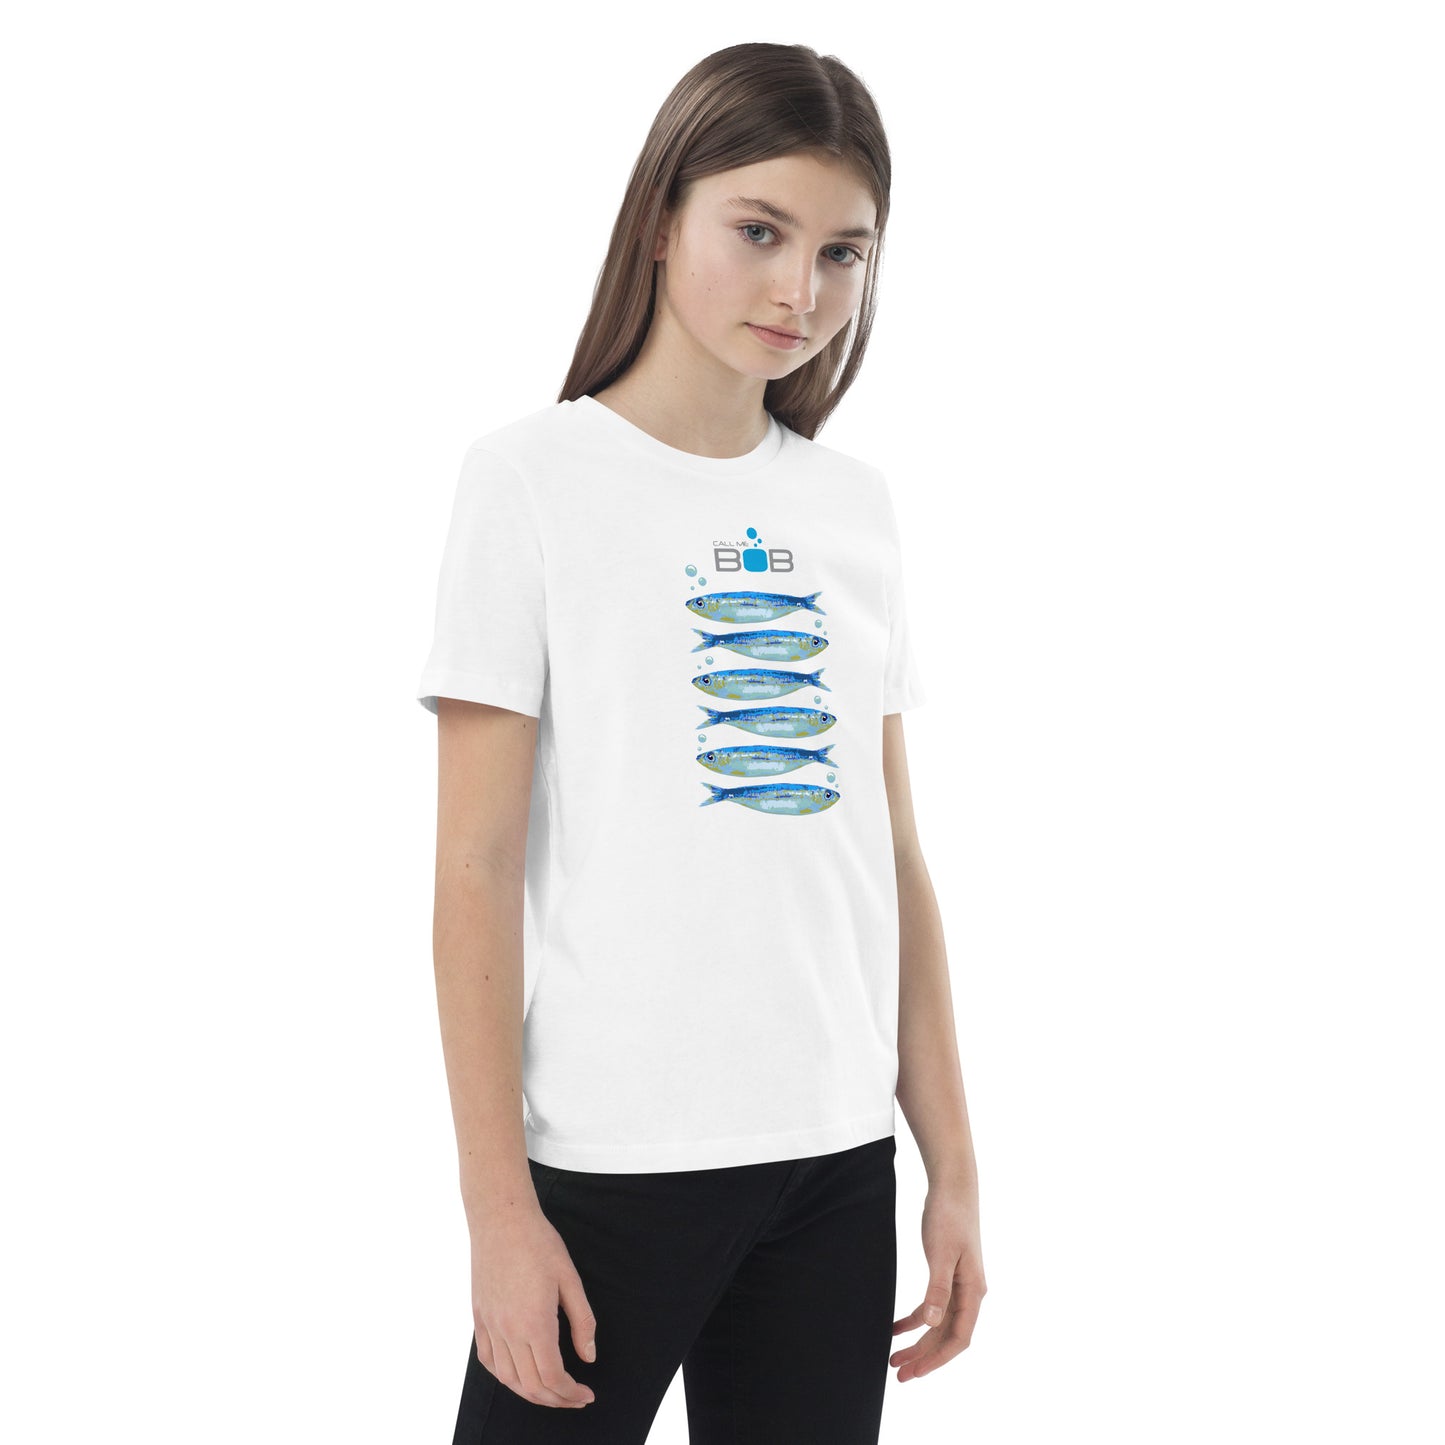 Half Dozen Sardines, organic cotton t-shirt